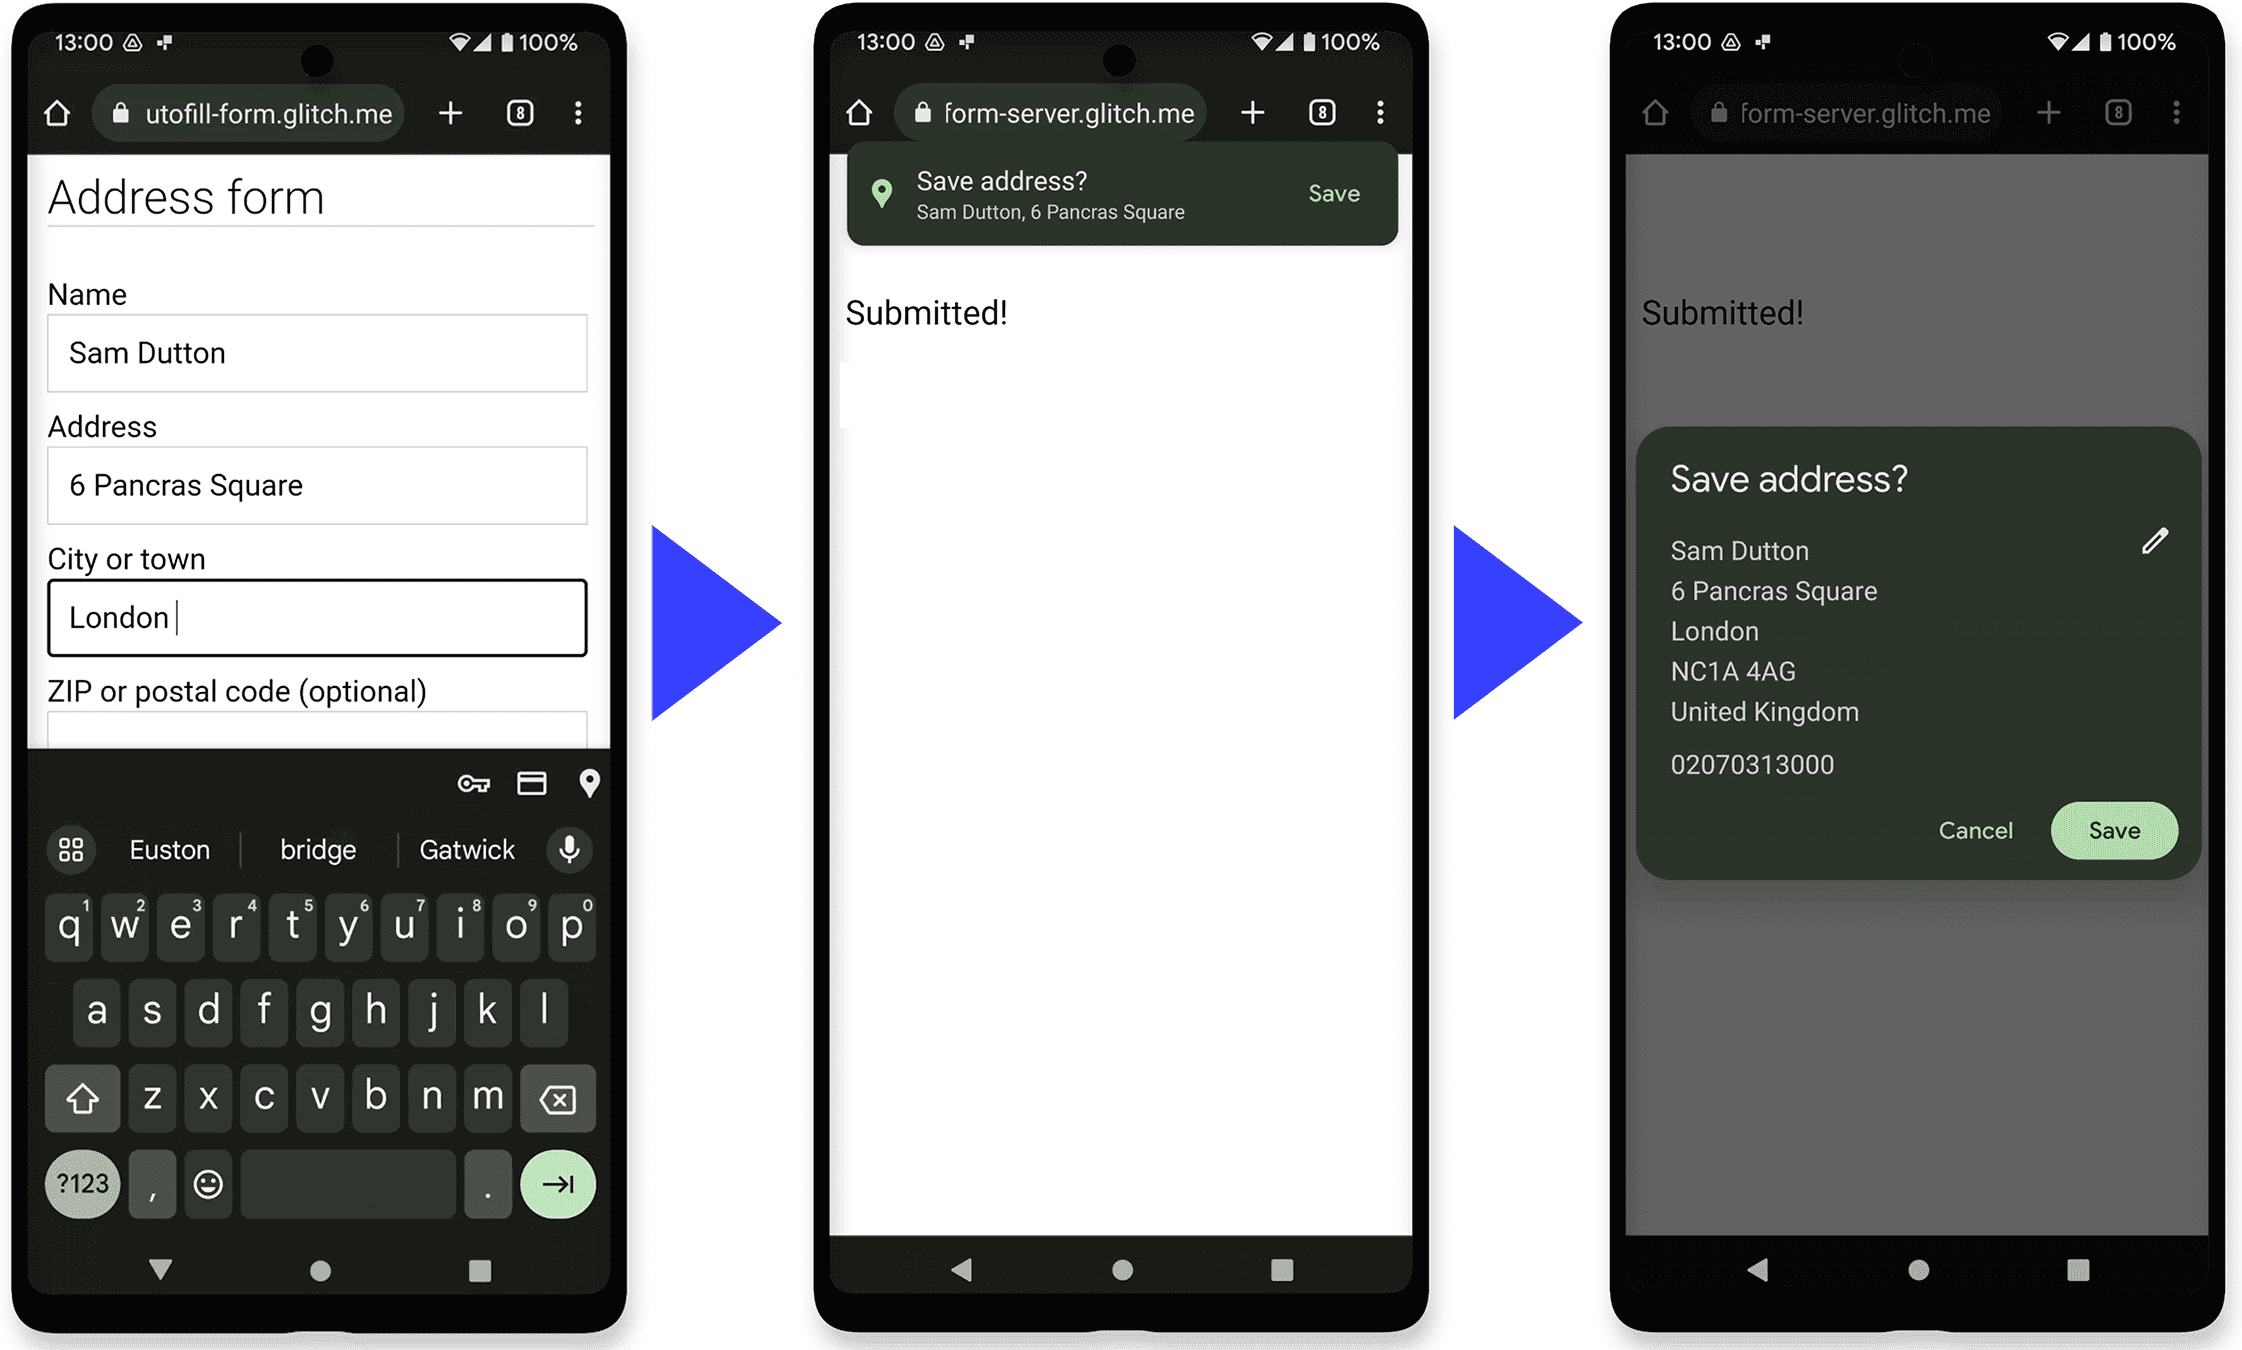 ภาพหน้าจอ Android 3 ภาพ ได้แก่ แบบฟอร์มที่อยู่ใน Chrome ฟีเจอร์ป้อนข้อความอัตโนมัติของ Chrome เสนอให้บันทึกที่อยู่ จากนั้นแสดงกล่องโต้ตอบสำหรับแก้ไขรายการป้อนข้อความอัตโนมัติใหม่